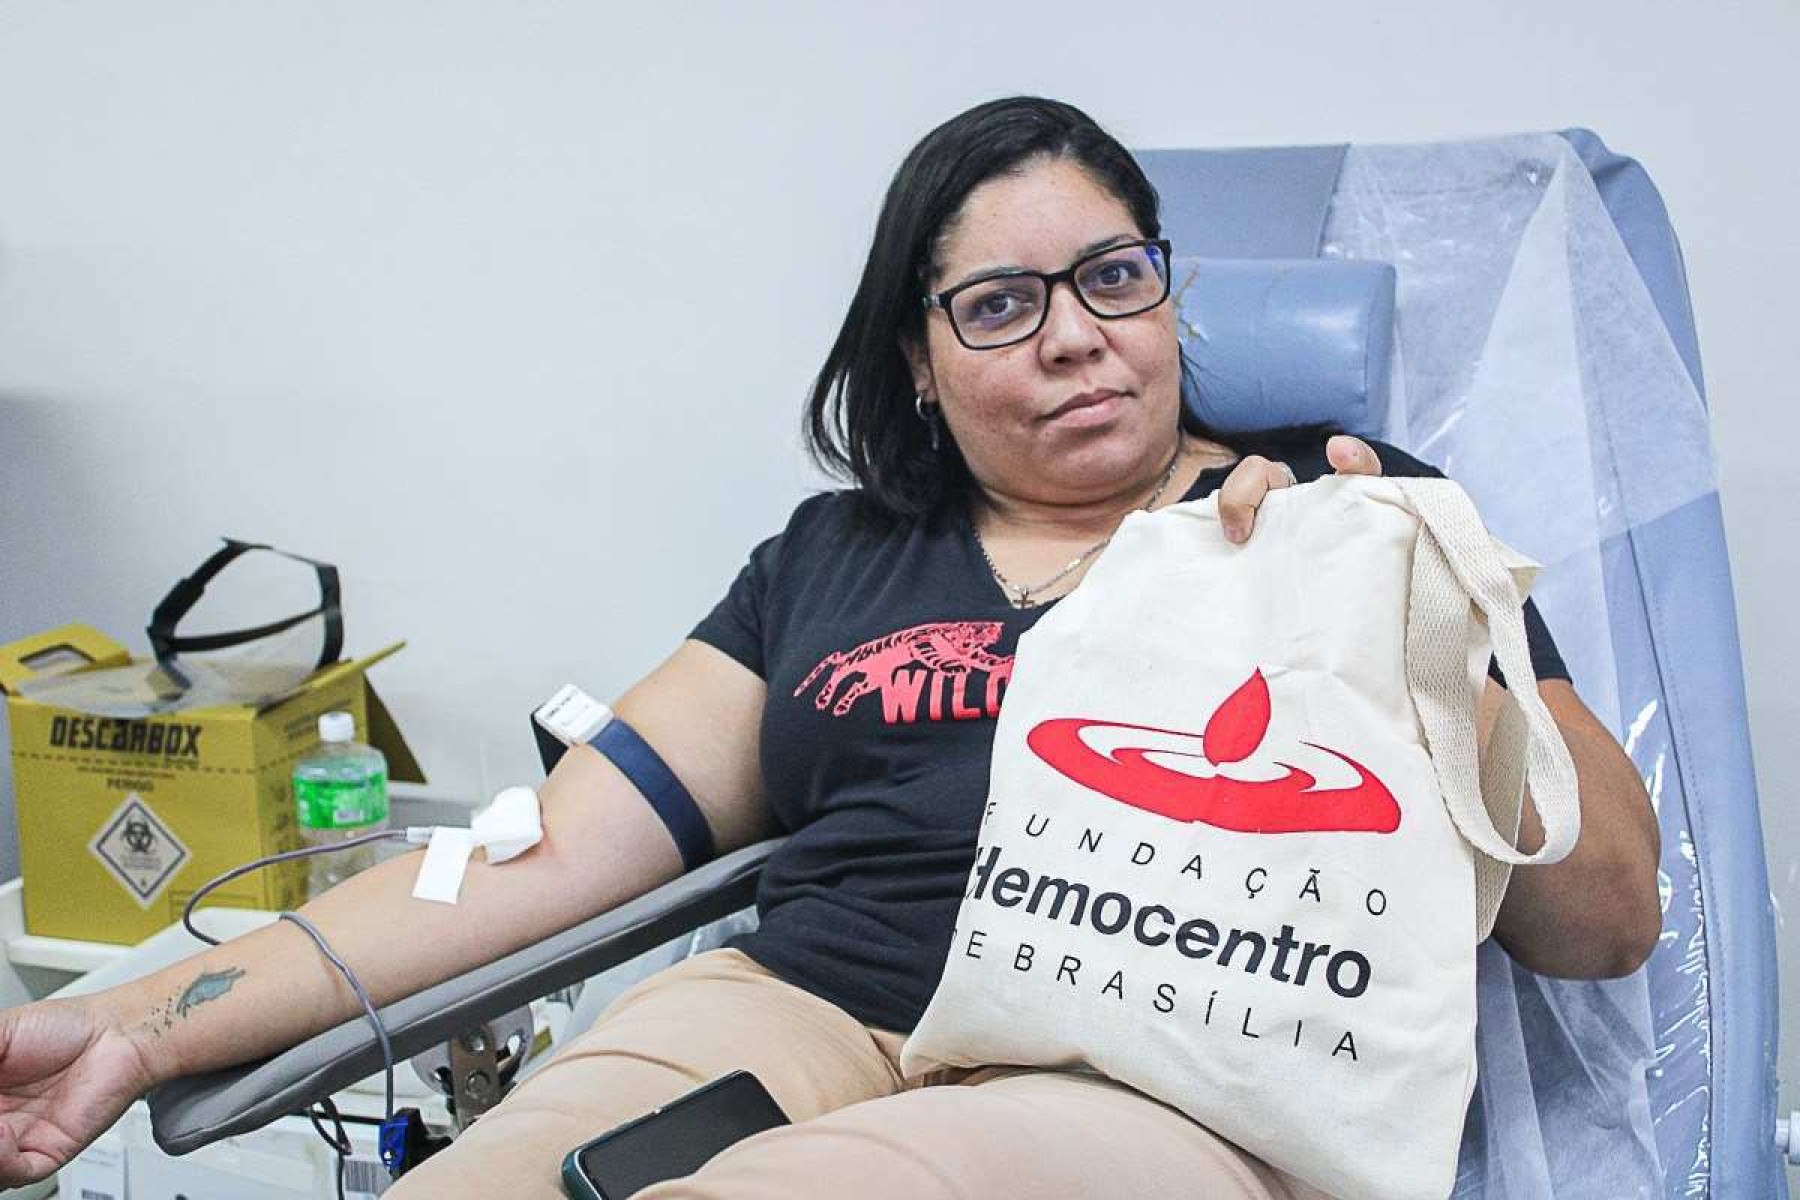 Junho Vermelho: Hemocentro de Brasília lança campanha para conscientização sobre doação de sangue